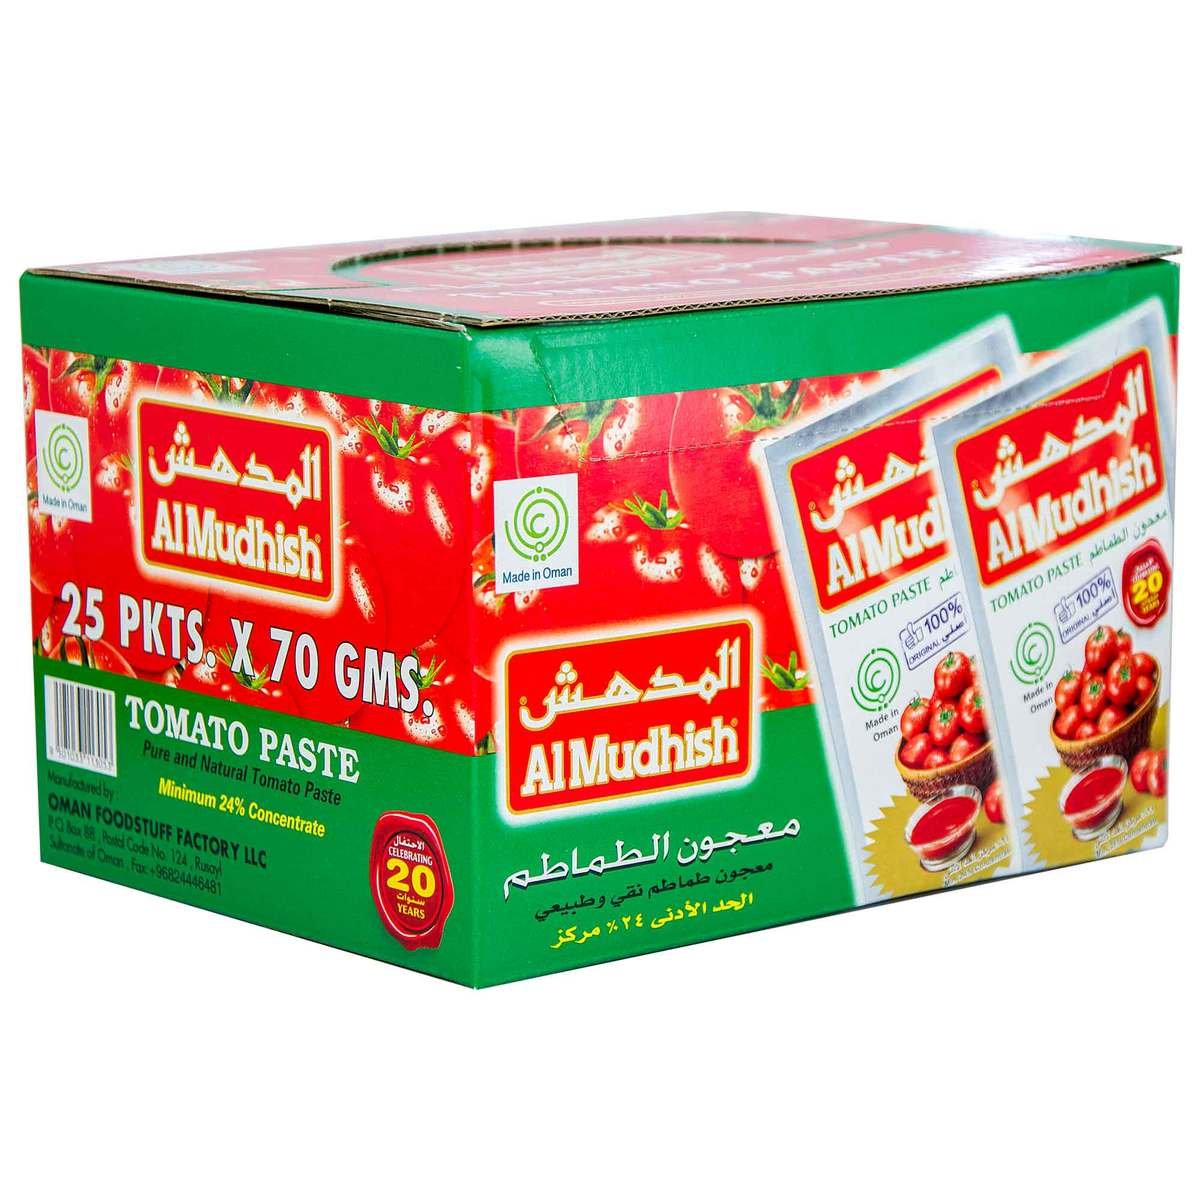 Al Mudhish Tomato Paste 70g